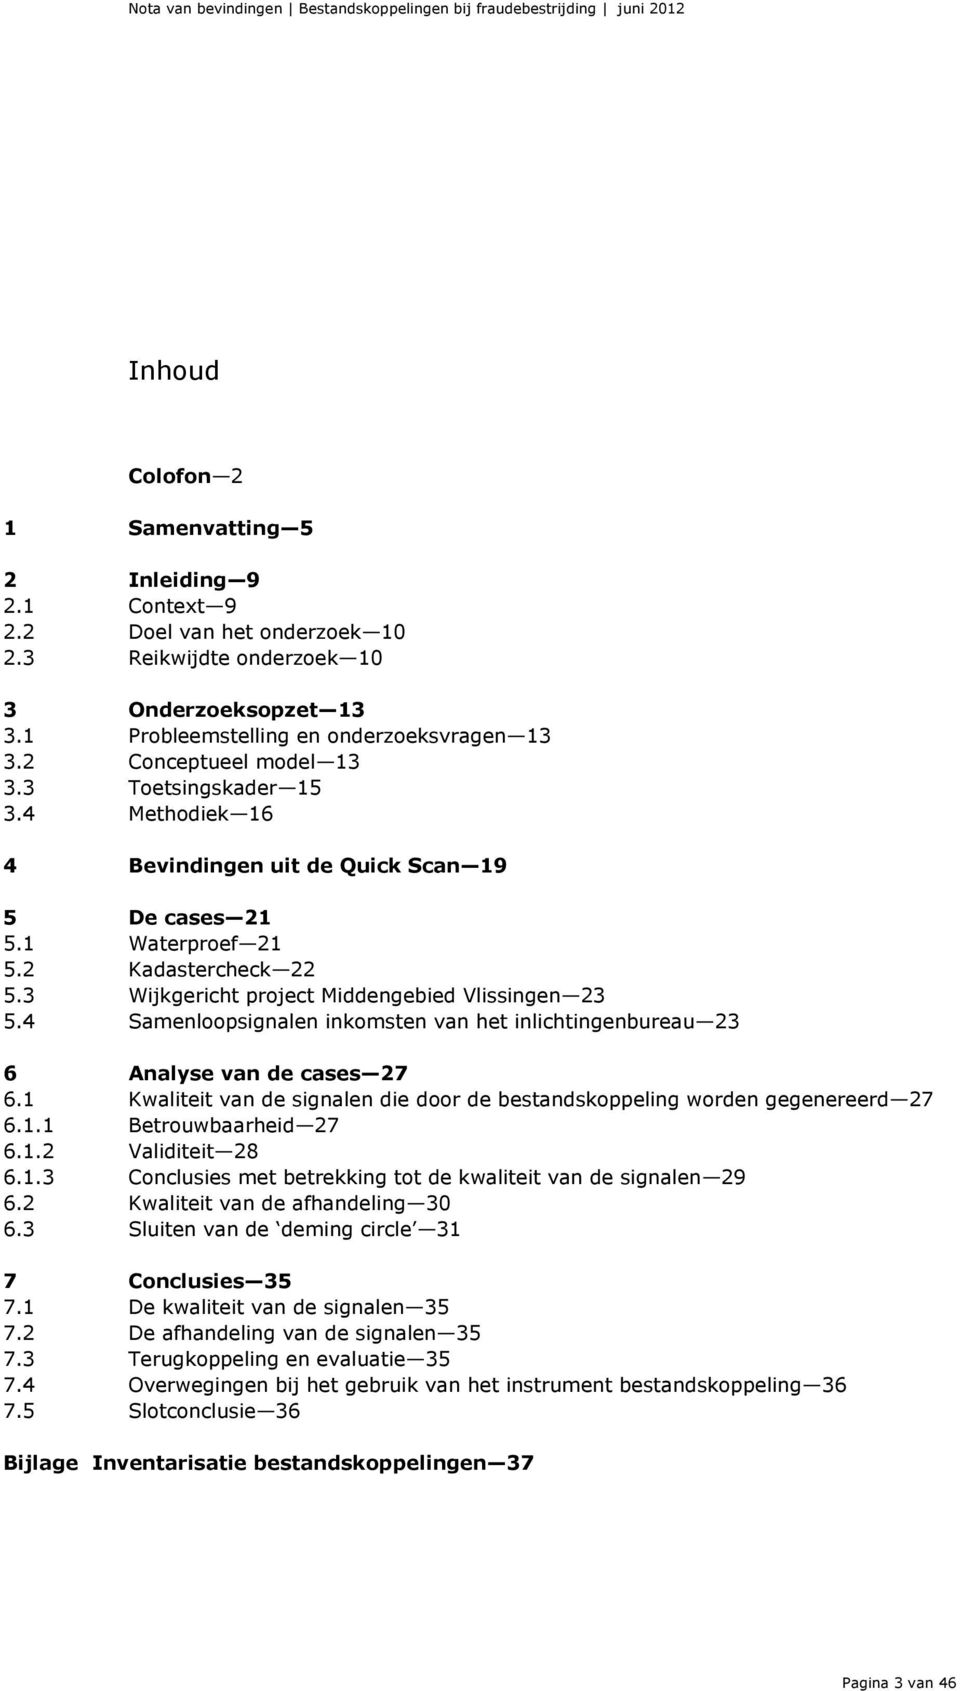 3 Wijkgericht project Middengebied Vlissingen 23 5.4 Samenloopsignalen inkomsten van het inlichtingenbureau 23 6 Analyse van de cases 27 6.